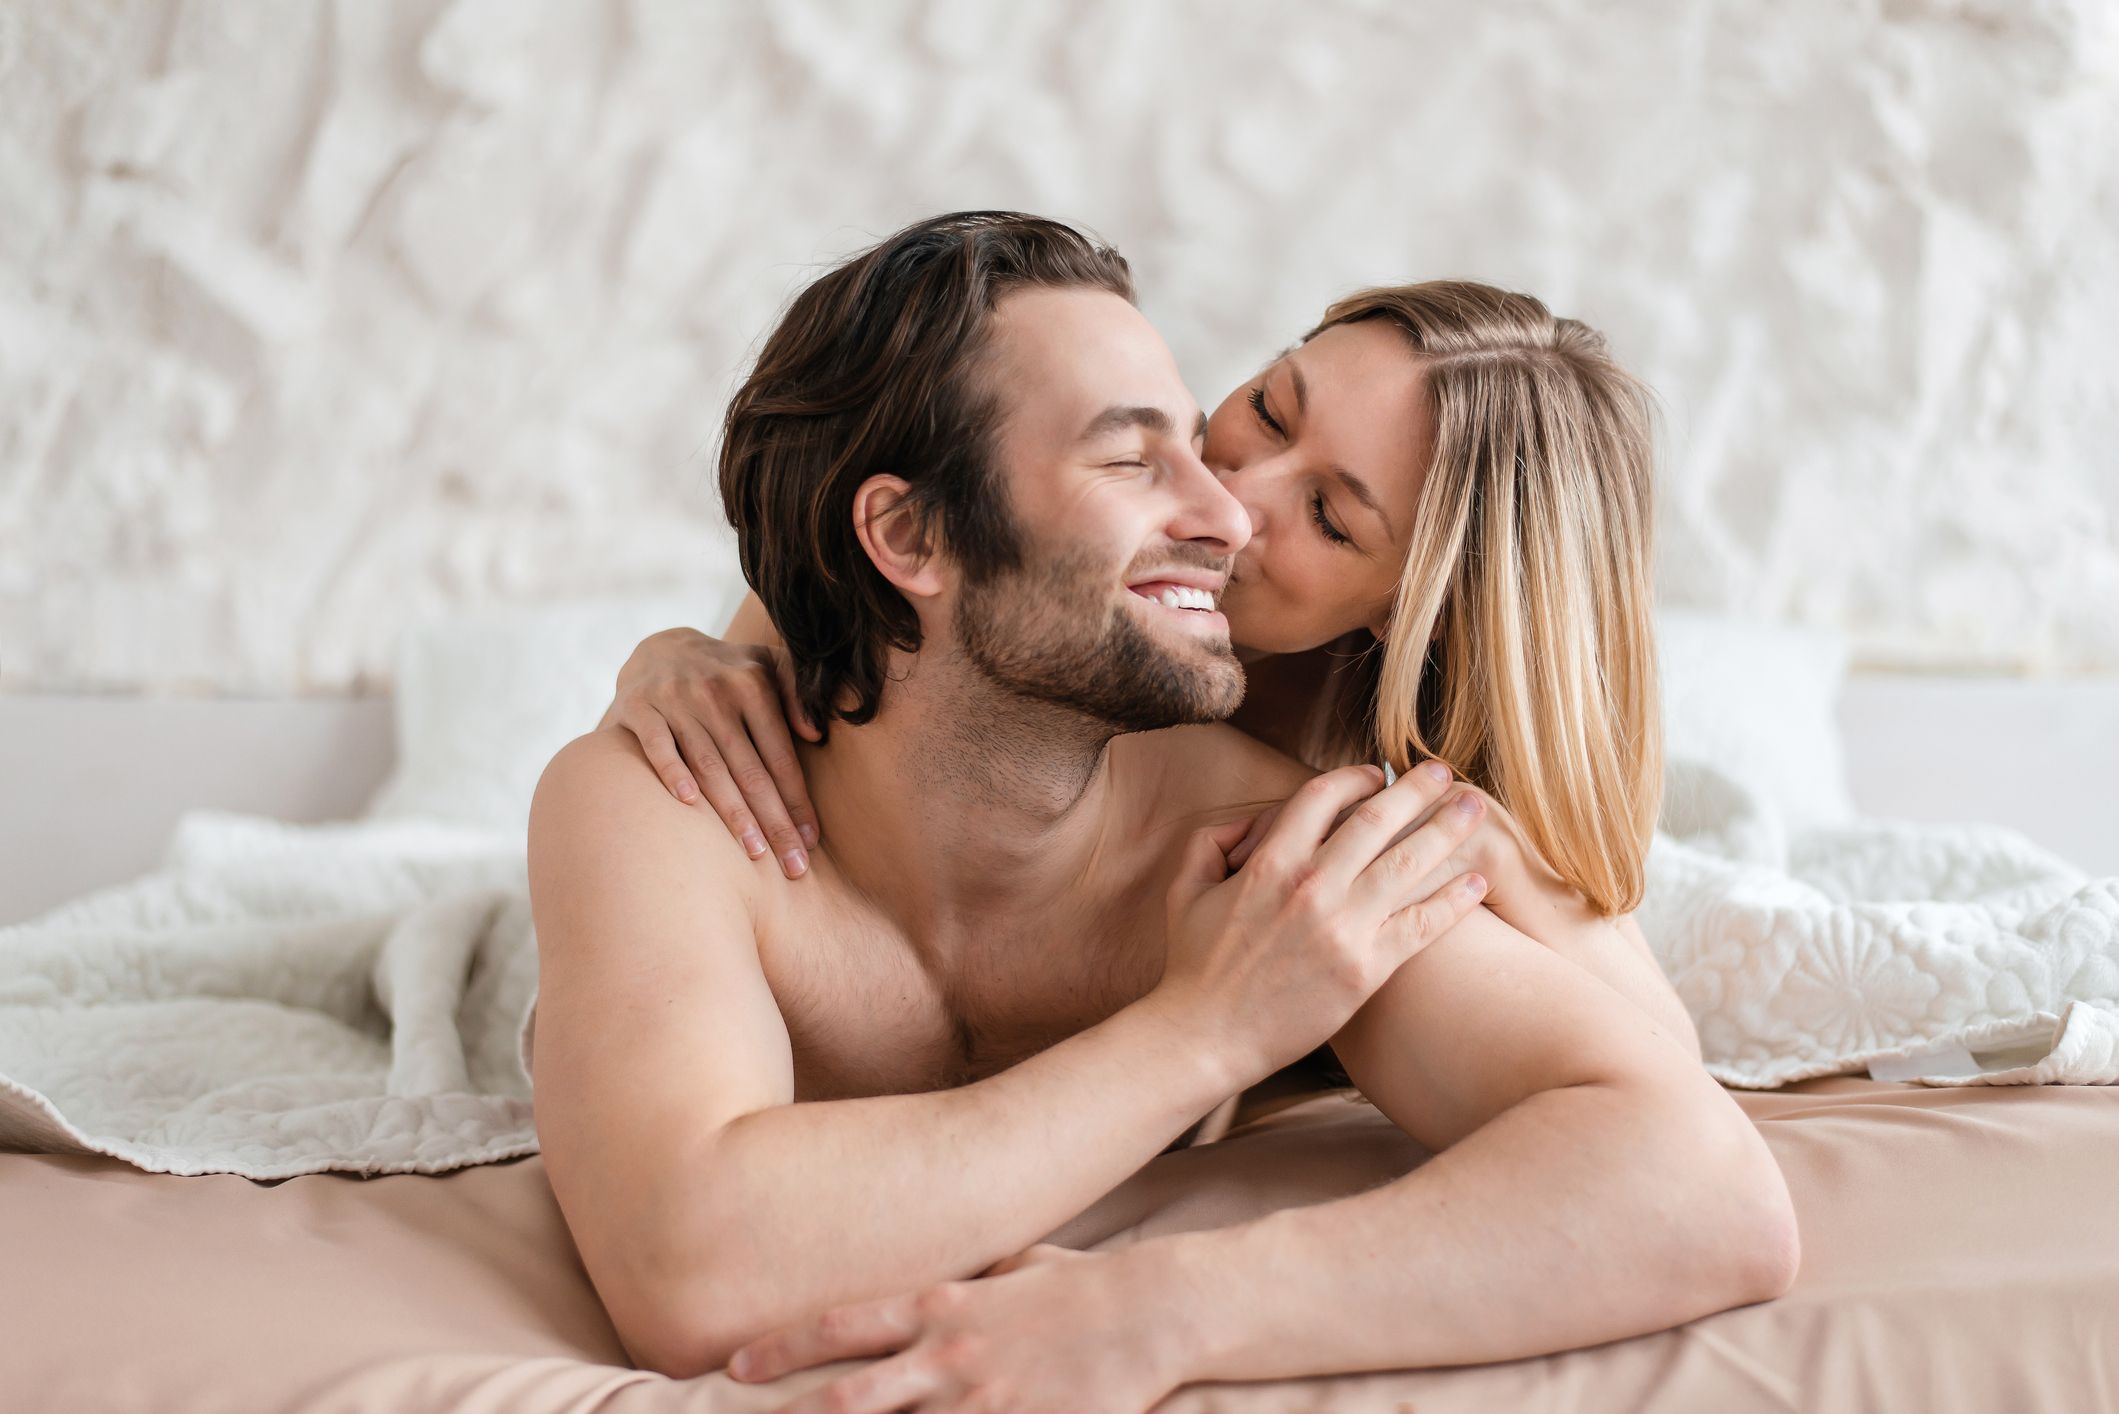 Wat Wap In - Sex â€“ Expert Advice, News, Trends